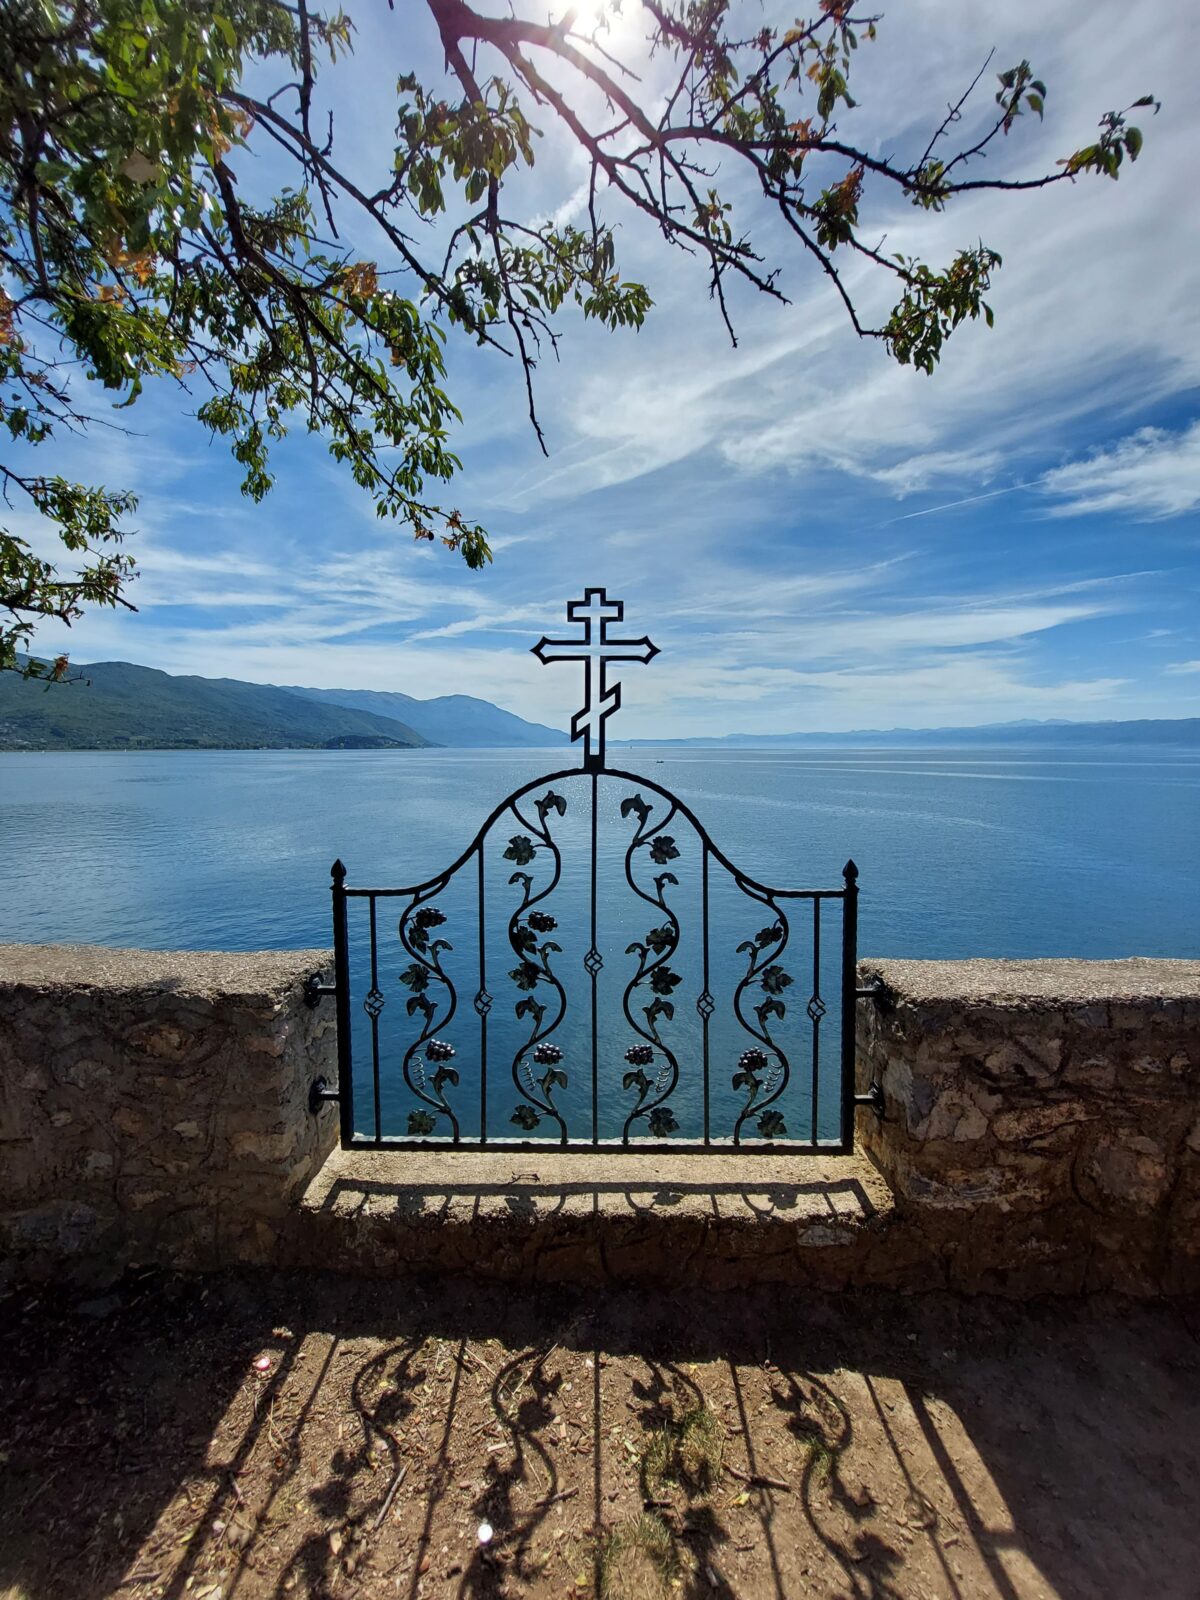 Visiter Ohrid, le joyaux de la Macédoine